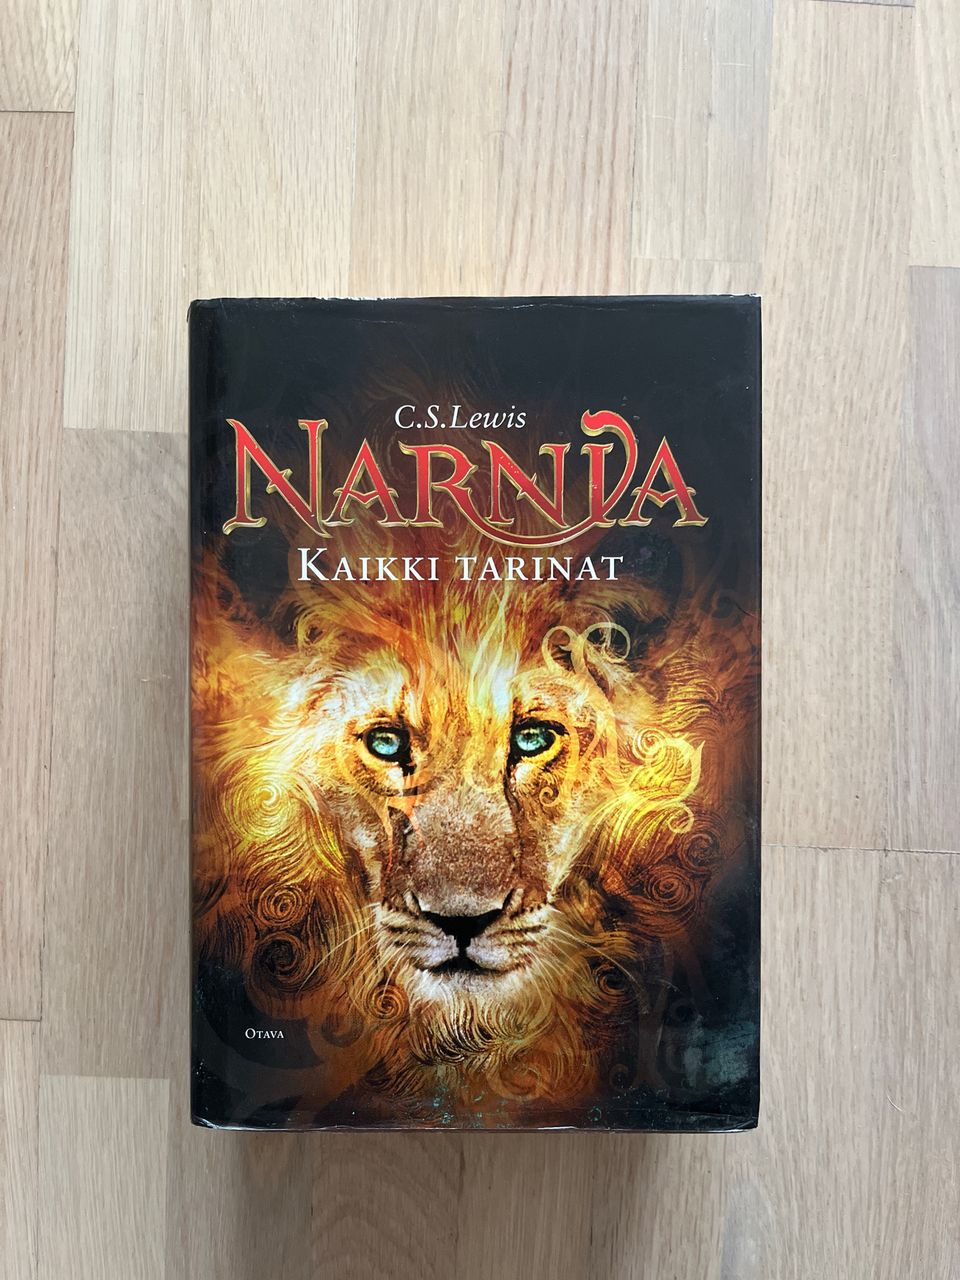 Narnia: Kaikki tarinat